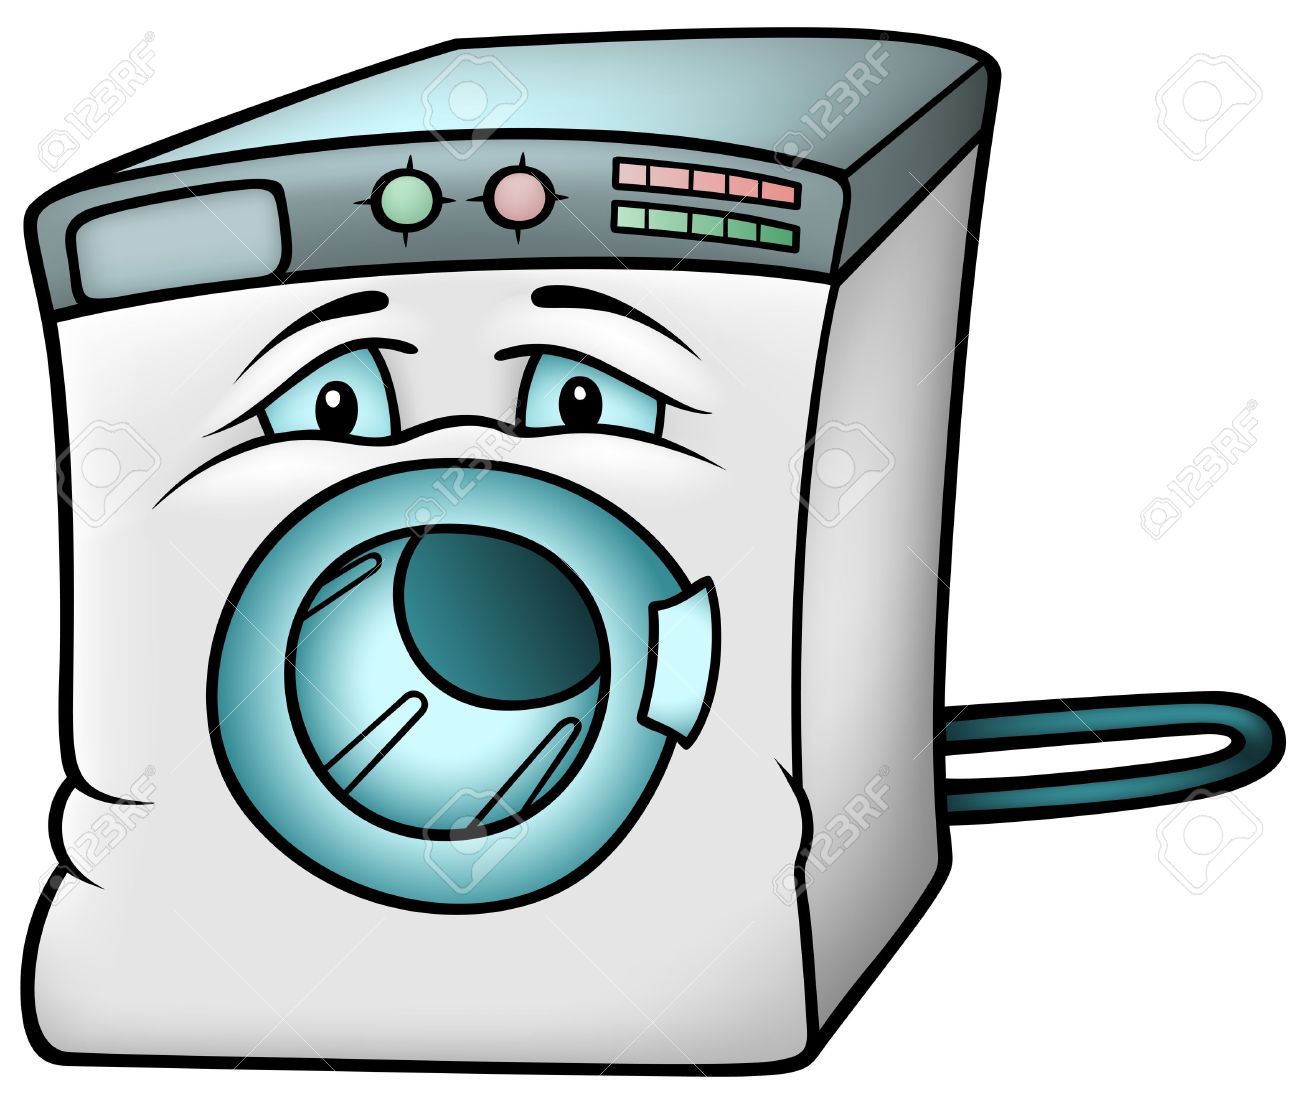 Household Wash Machine 01 07 